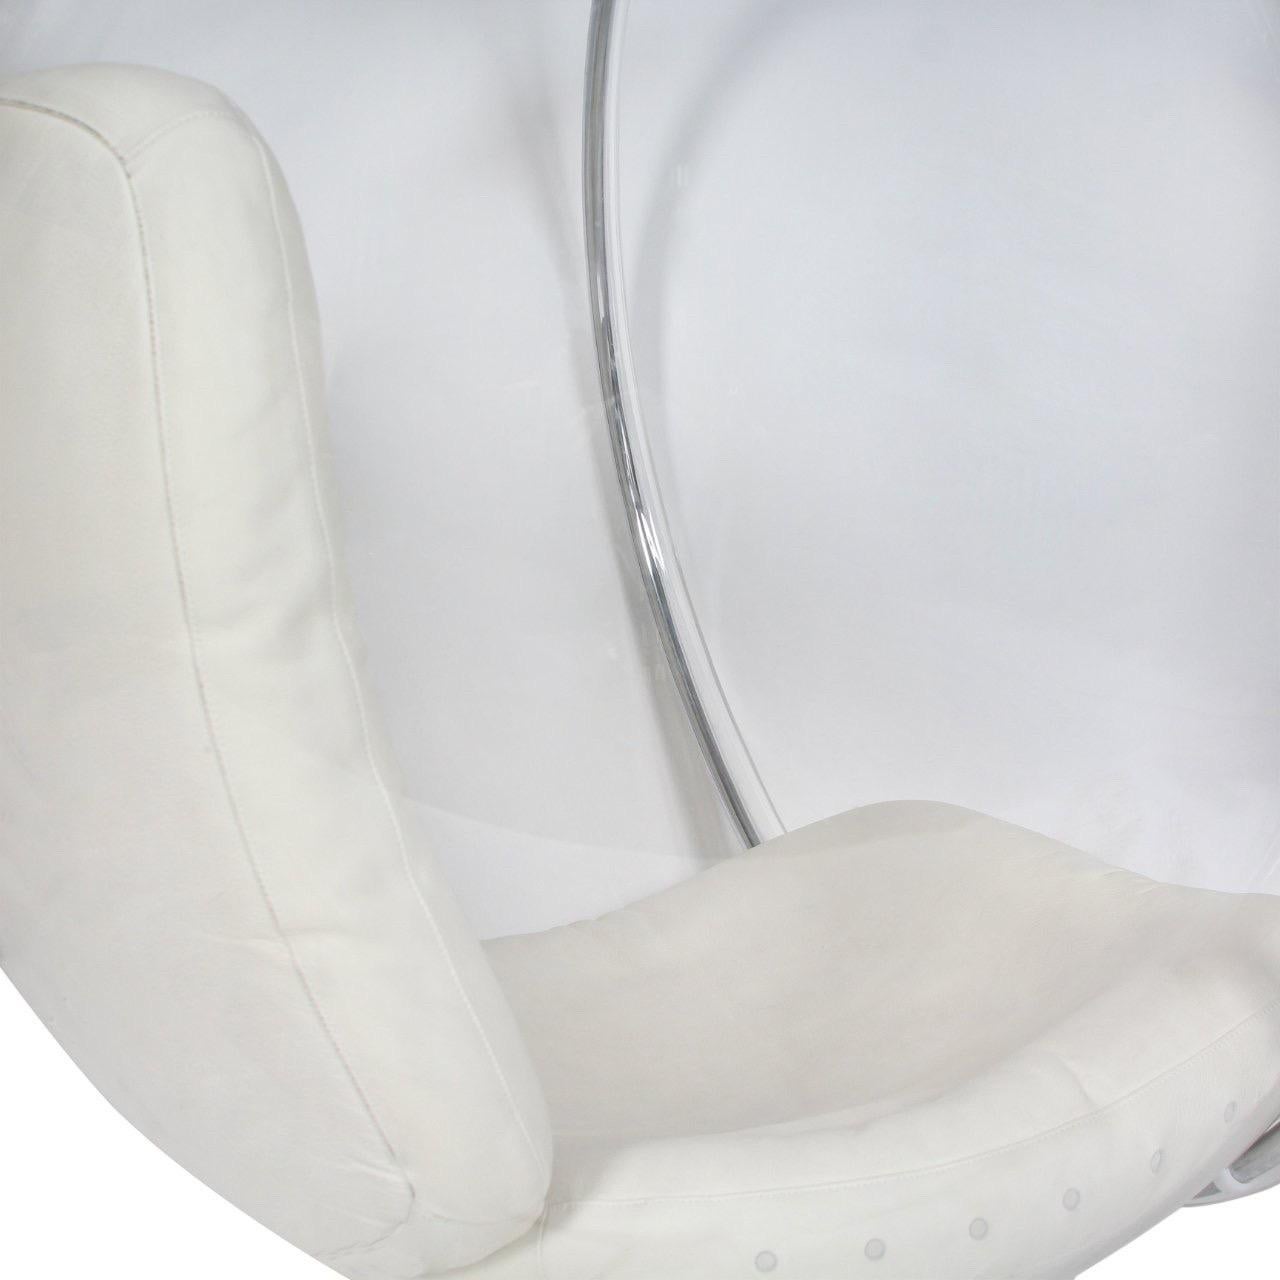 Ein originaler Bubble Chair, entworfen von Eero Aarnio, um 1980. Der von der Decke hängende Stuhl hat eine Form aus Acryl, einen massiven Rahmen aus Edelstahl und eine Lederpolsterung.

Abmessungen: 40.5x35.5x41.